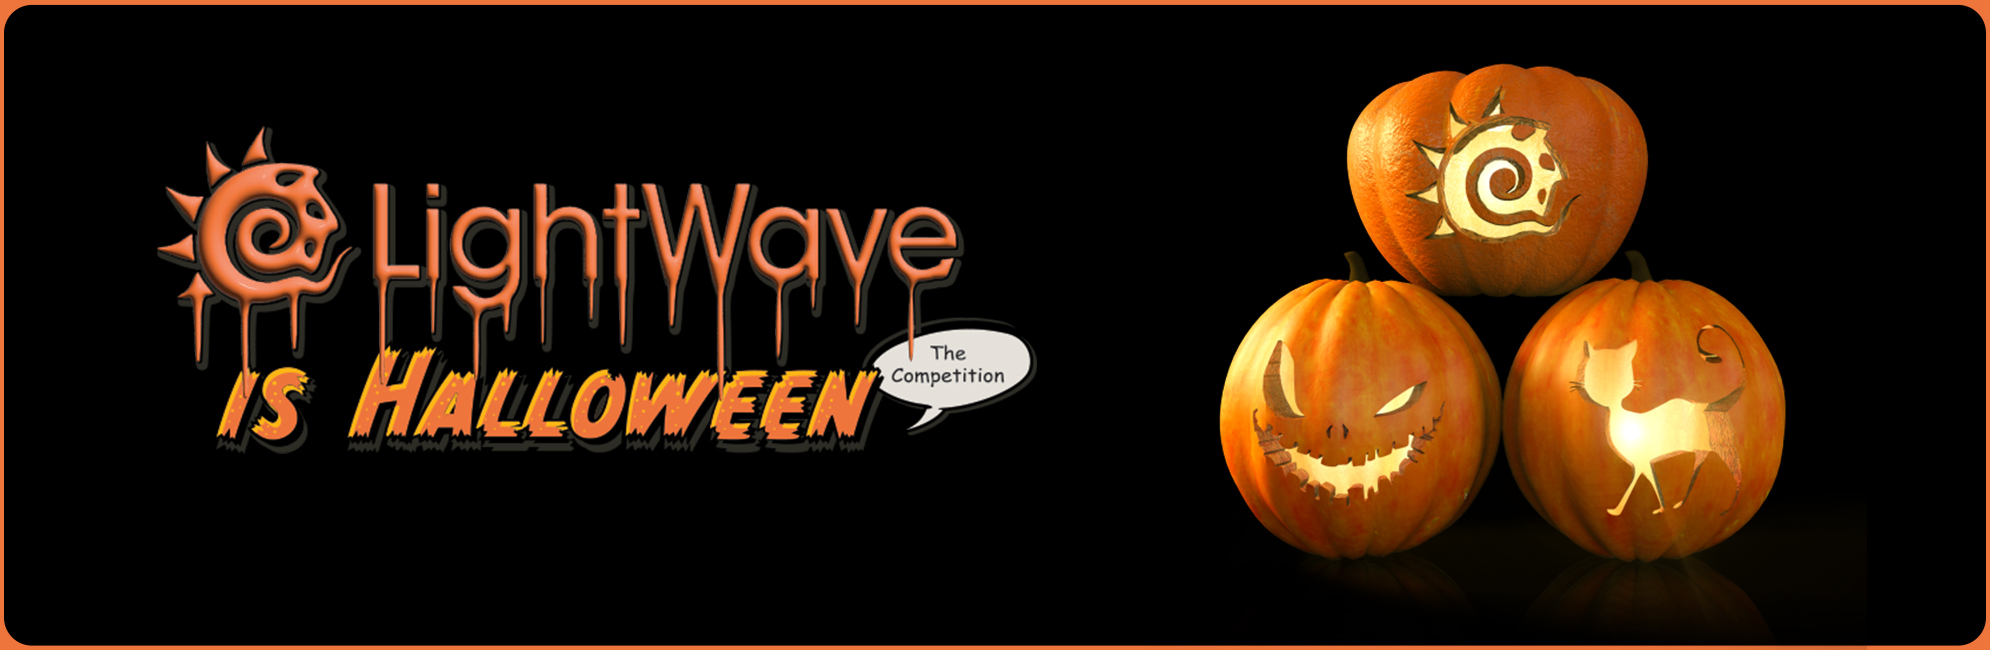 Nome: LightWave is Halloween  LightWave 3D Promo 20320918.jpg
Visite: 89
Dimensione: 387.4 KB